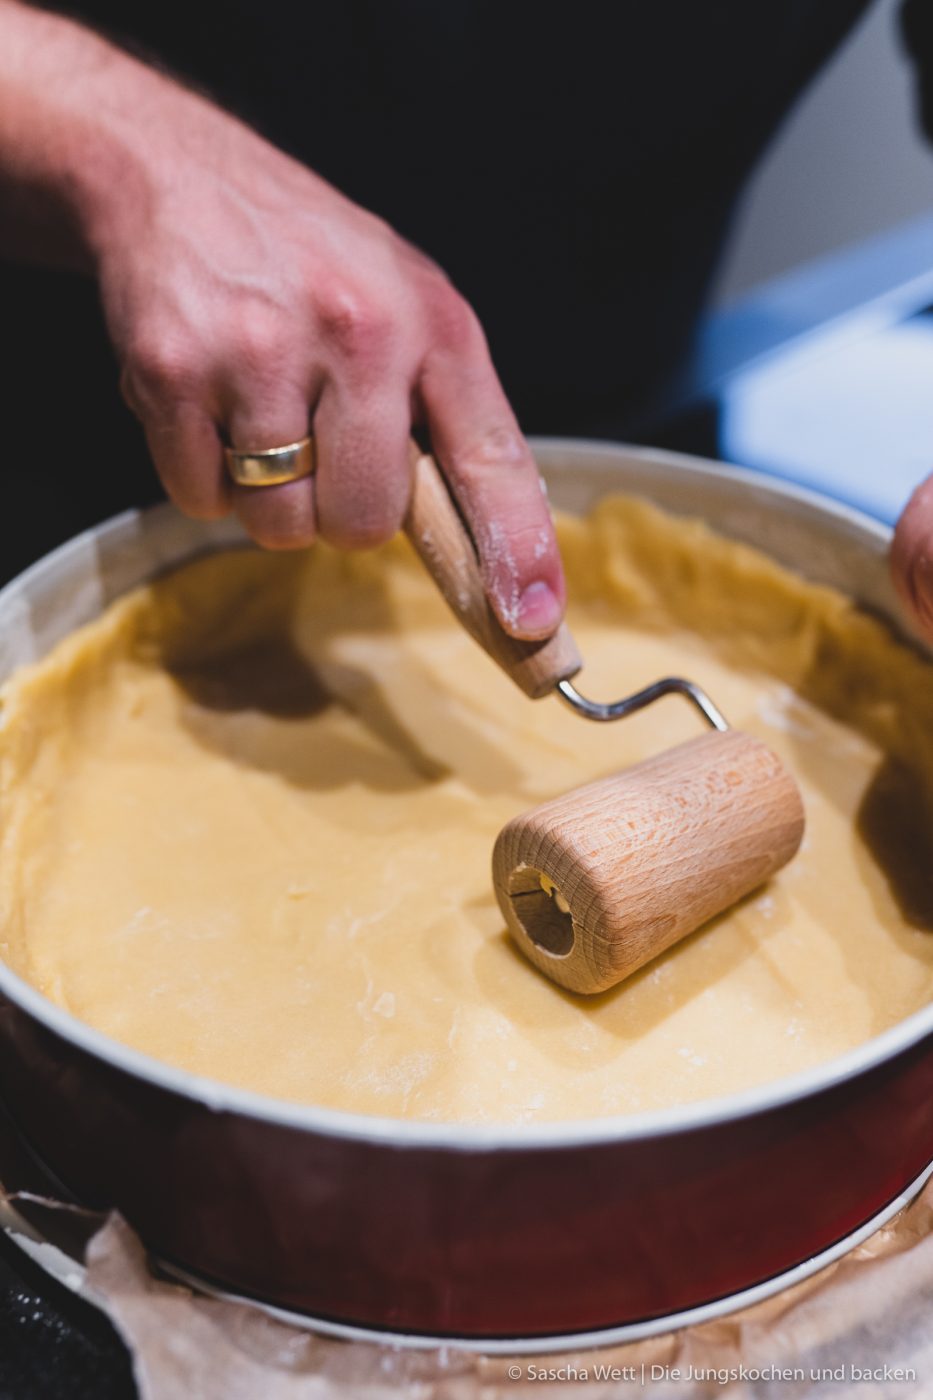 Rezept für einen klassischen Käsekuchen. Da es bei uns bisher kein Familienrezept gab, haben wir lange an unserer Version gebastelt. Jetzt also unser Familienrezept! #rezepte #cheesecake #käsekuchen #klassiker #backrezept